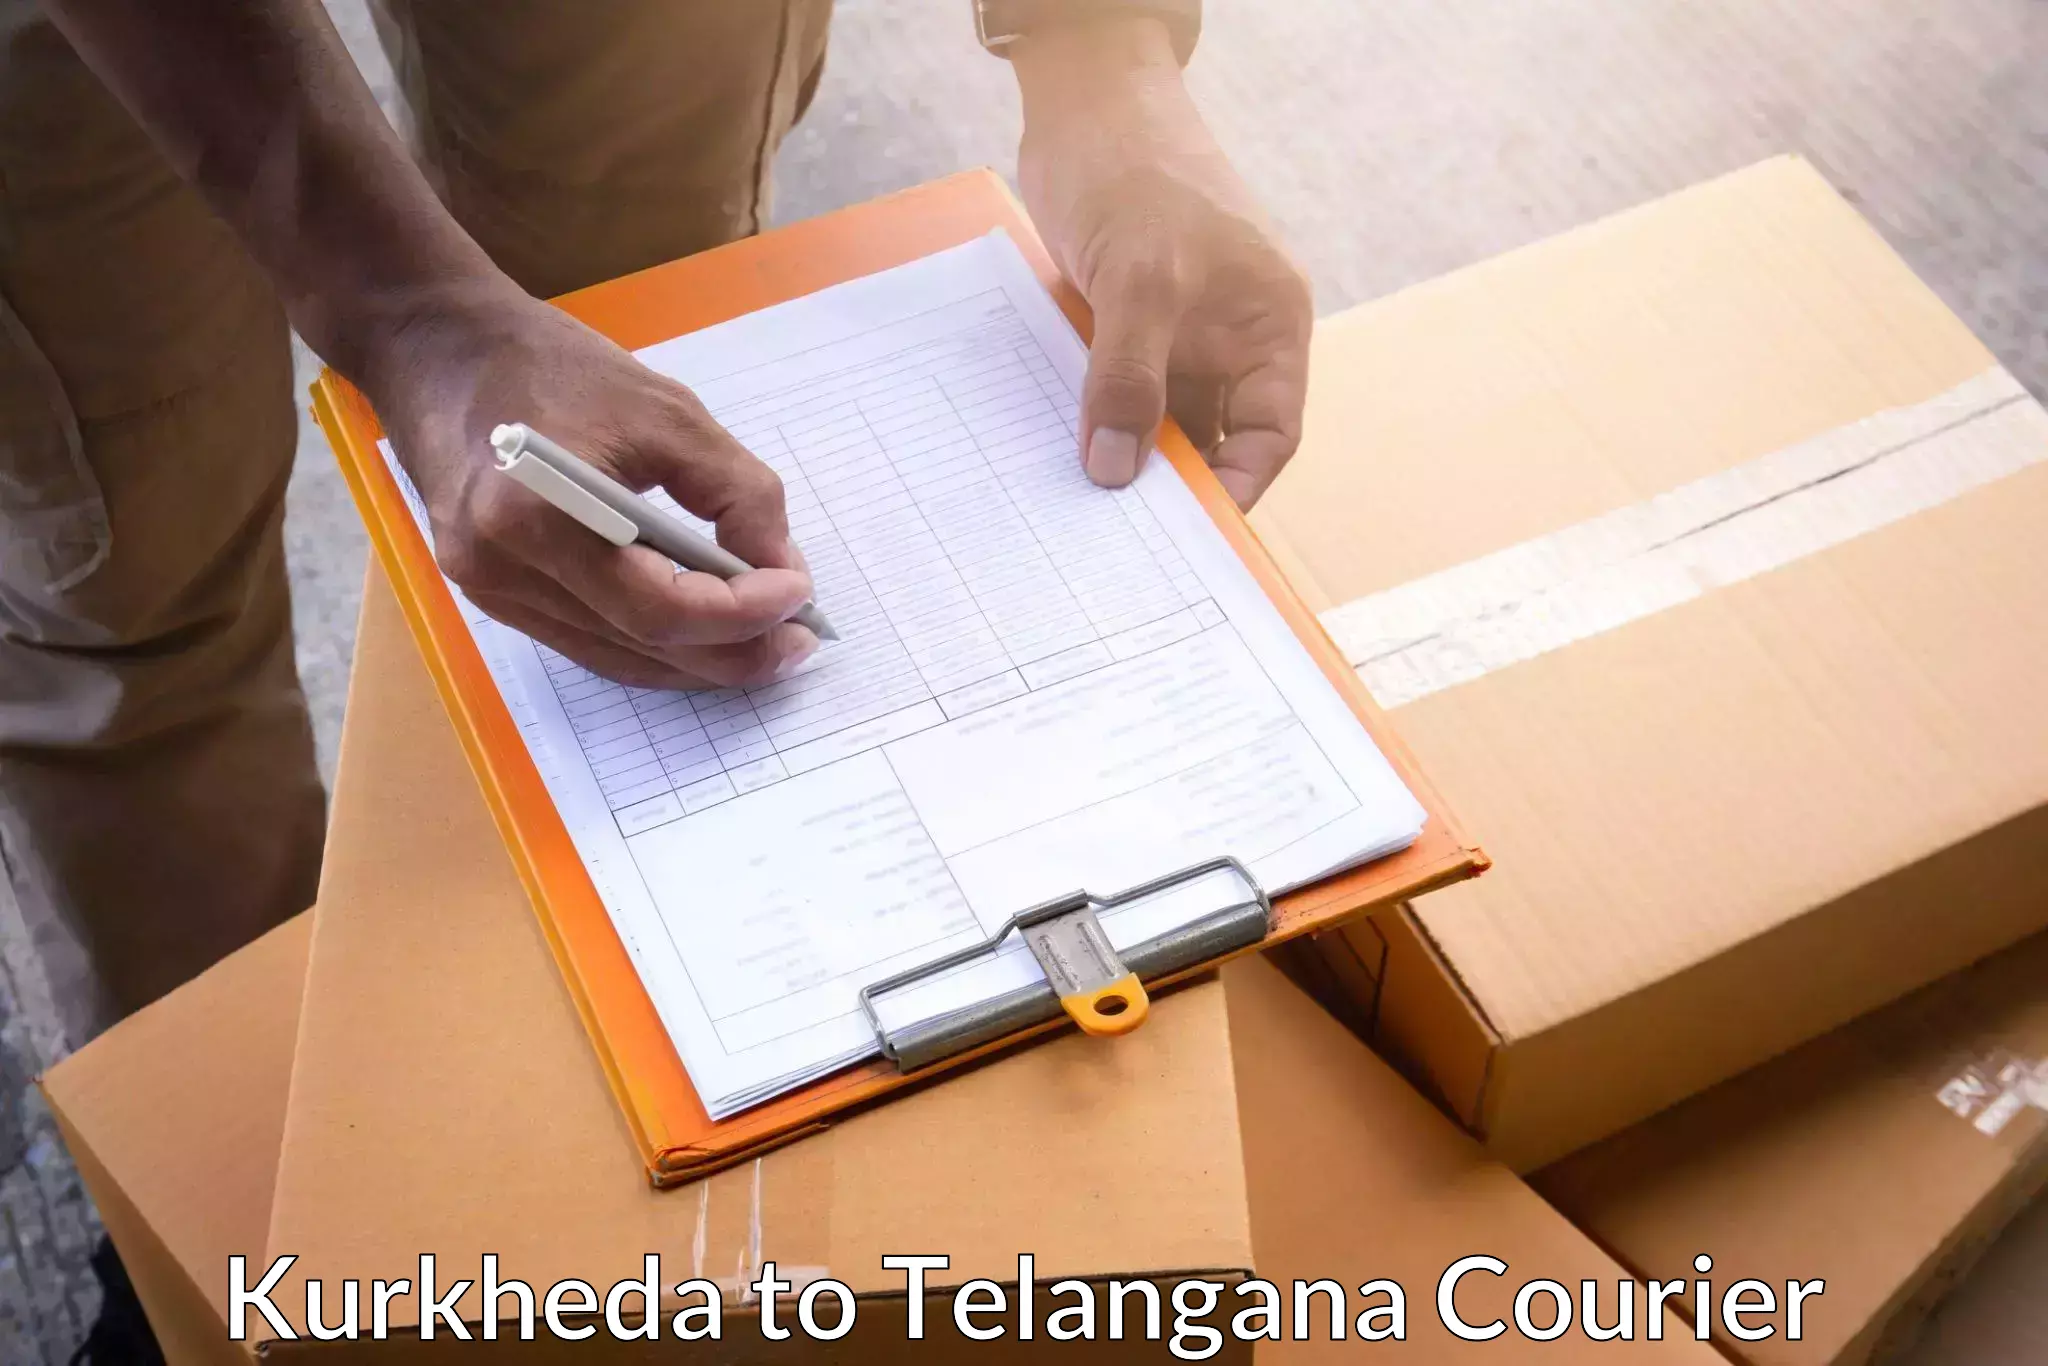 Package delivery network Kurkheda to Shamshabad